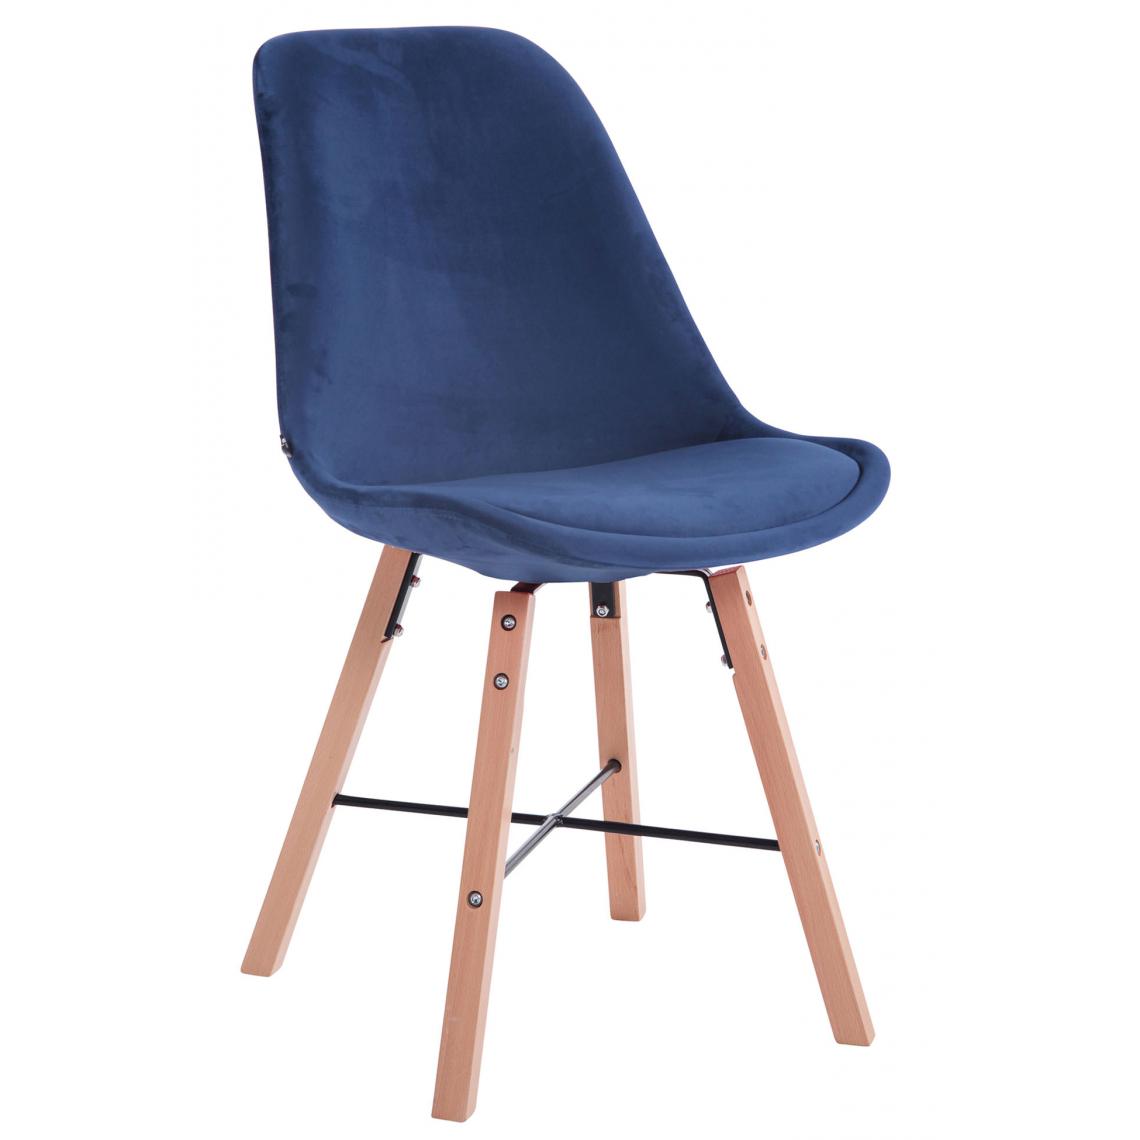 Icaverne - sublime Chaise visiteur en velours naturel famille Riga couleur bleu - Chaises